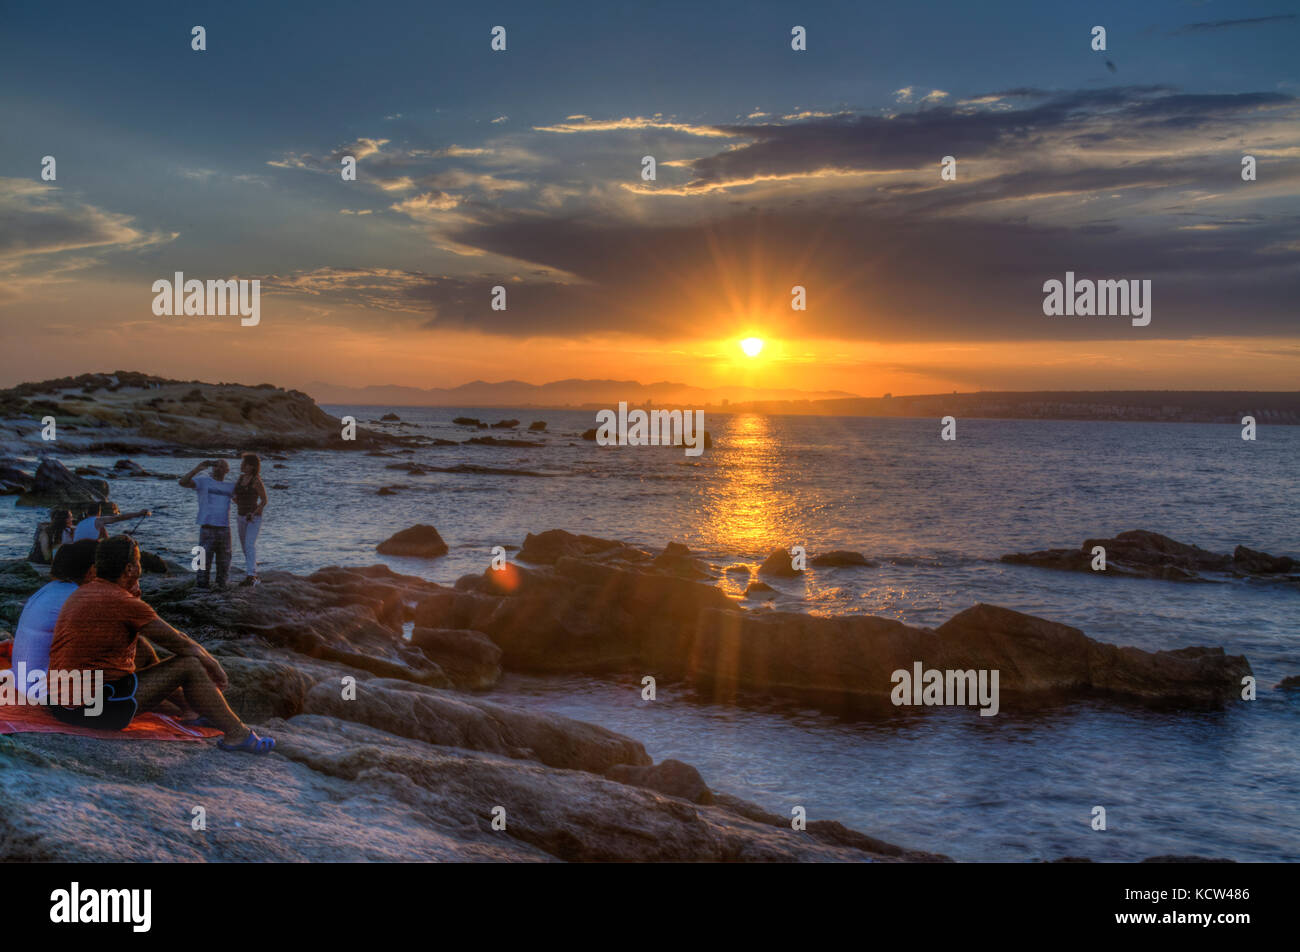 HDR-Bild von Menschen gerade der Sonnenuntergang über Felsen im Meer auf der spanischen Insel Tabarca Stockfoto